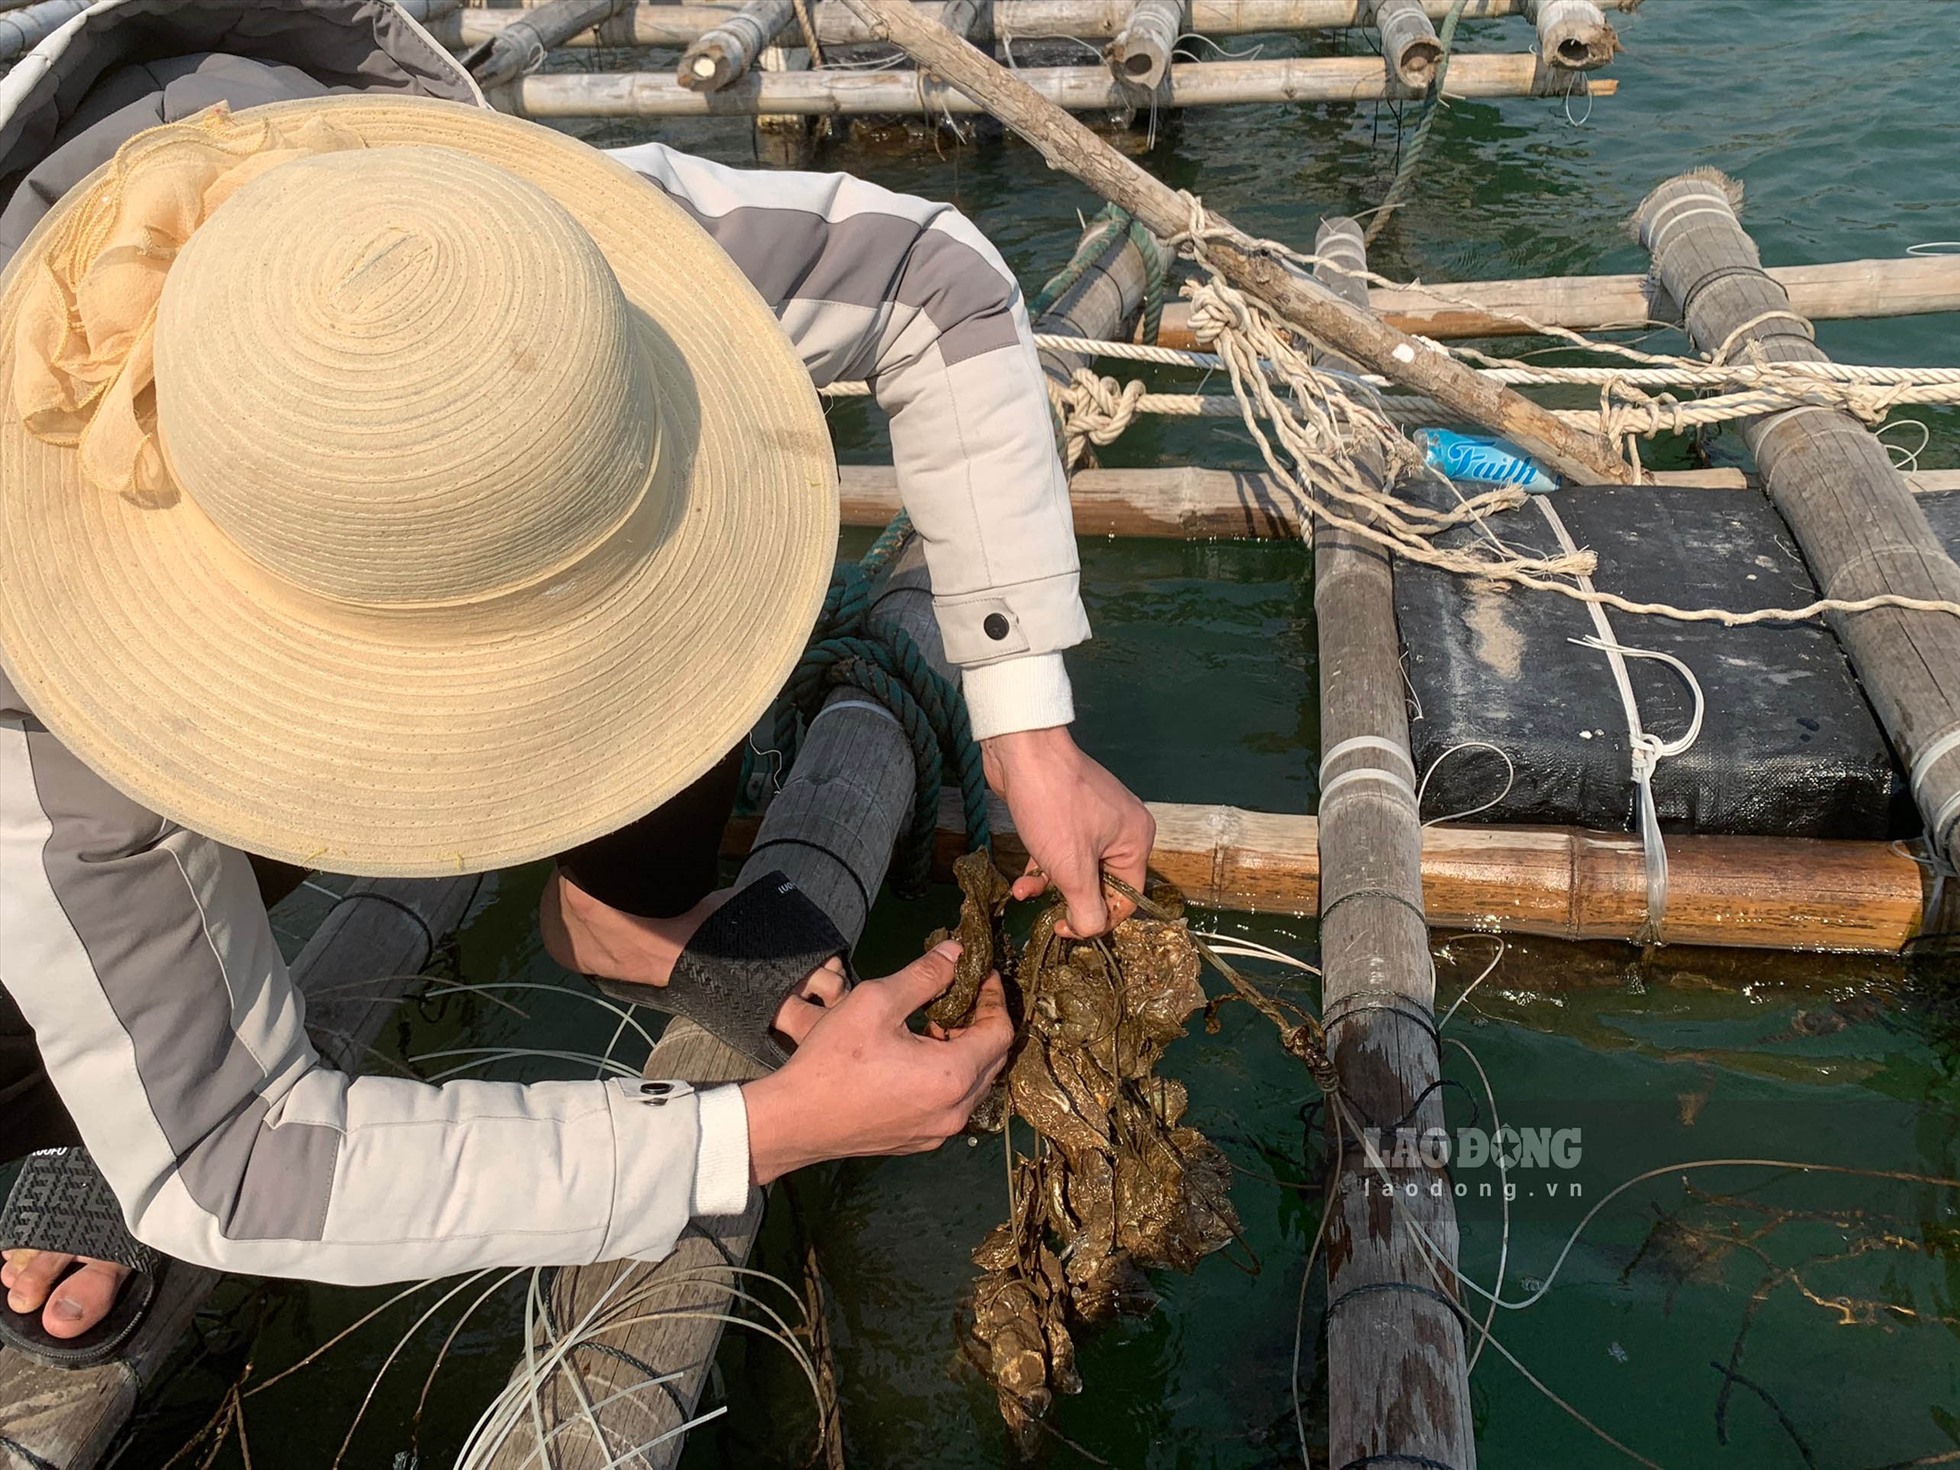 Doanh nghiệp tiên phong nuôi hàu biển tại Vân Đồn  Báo Quảng Ninh điện tử